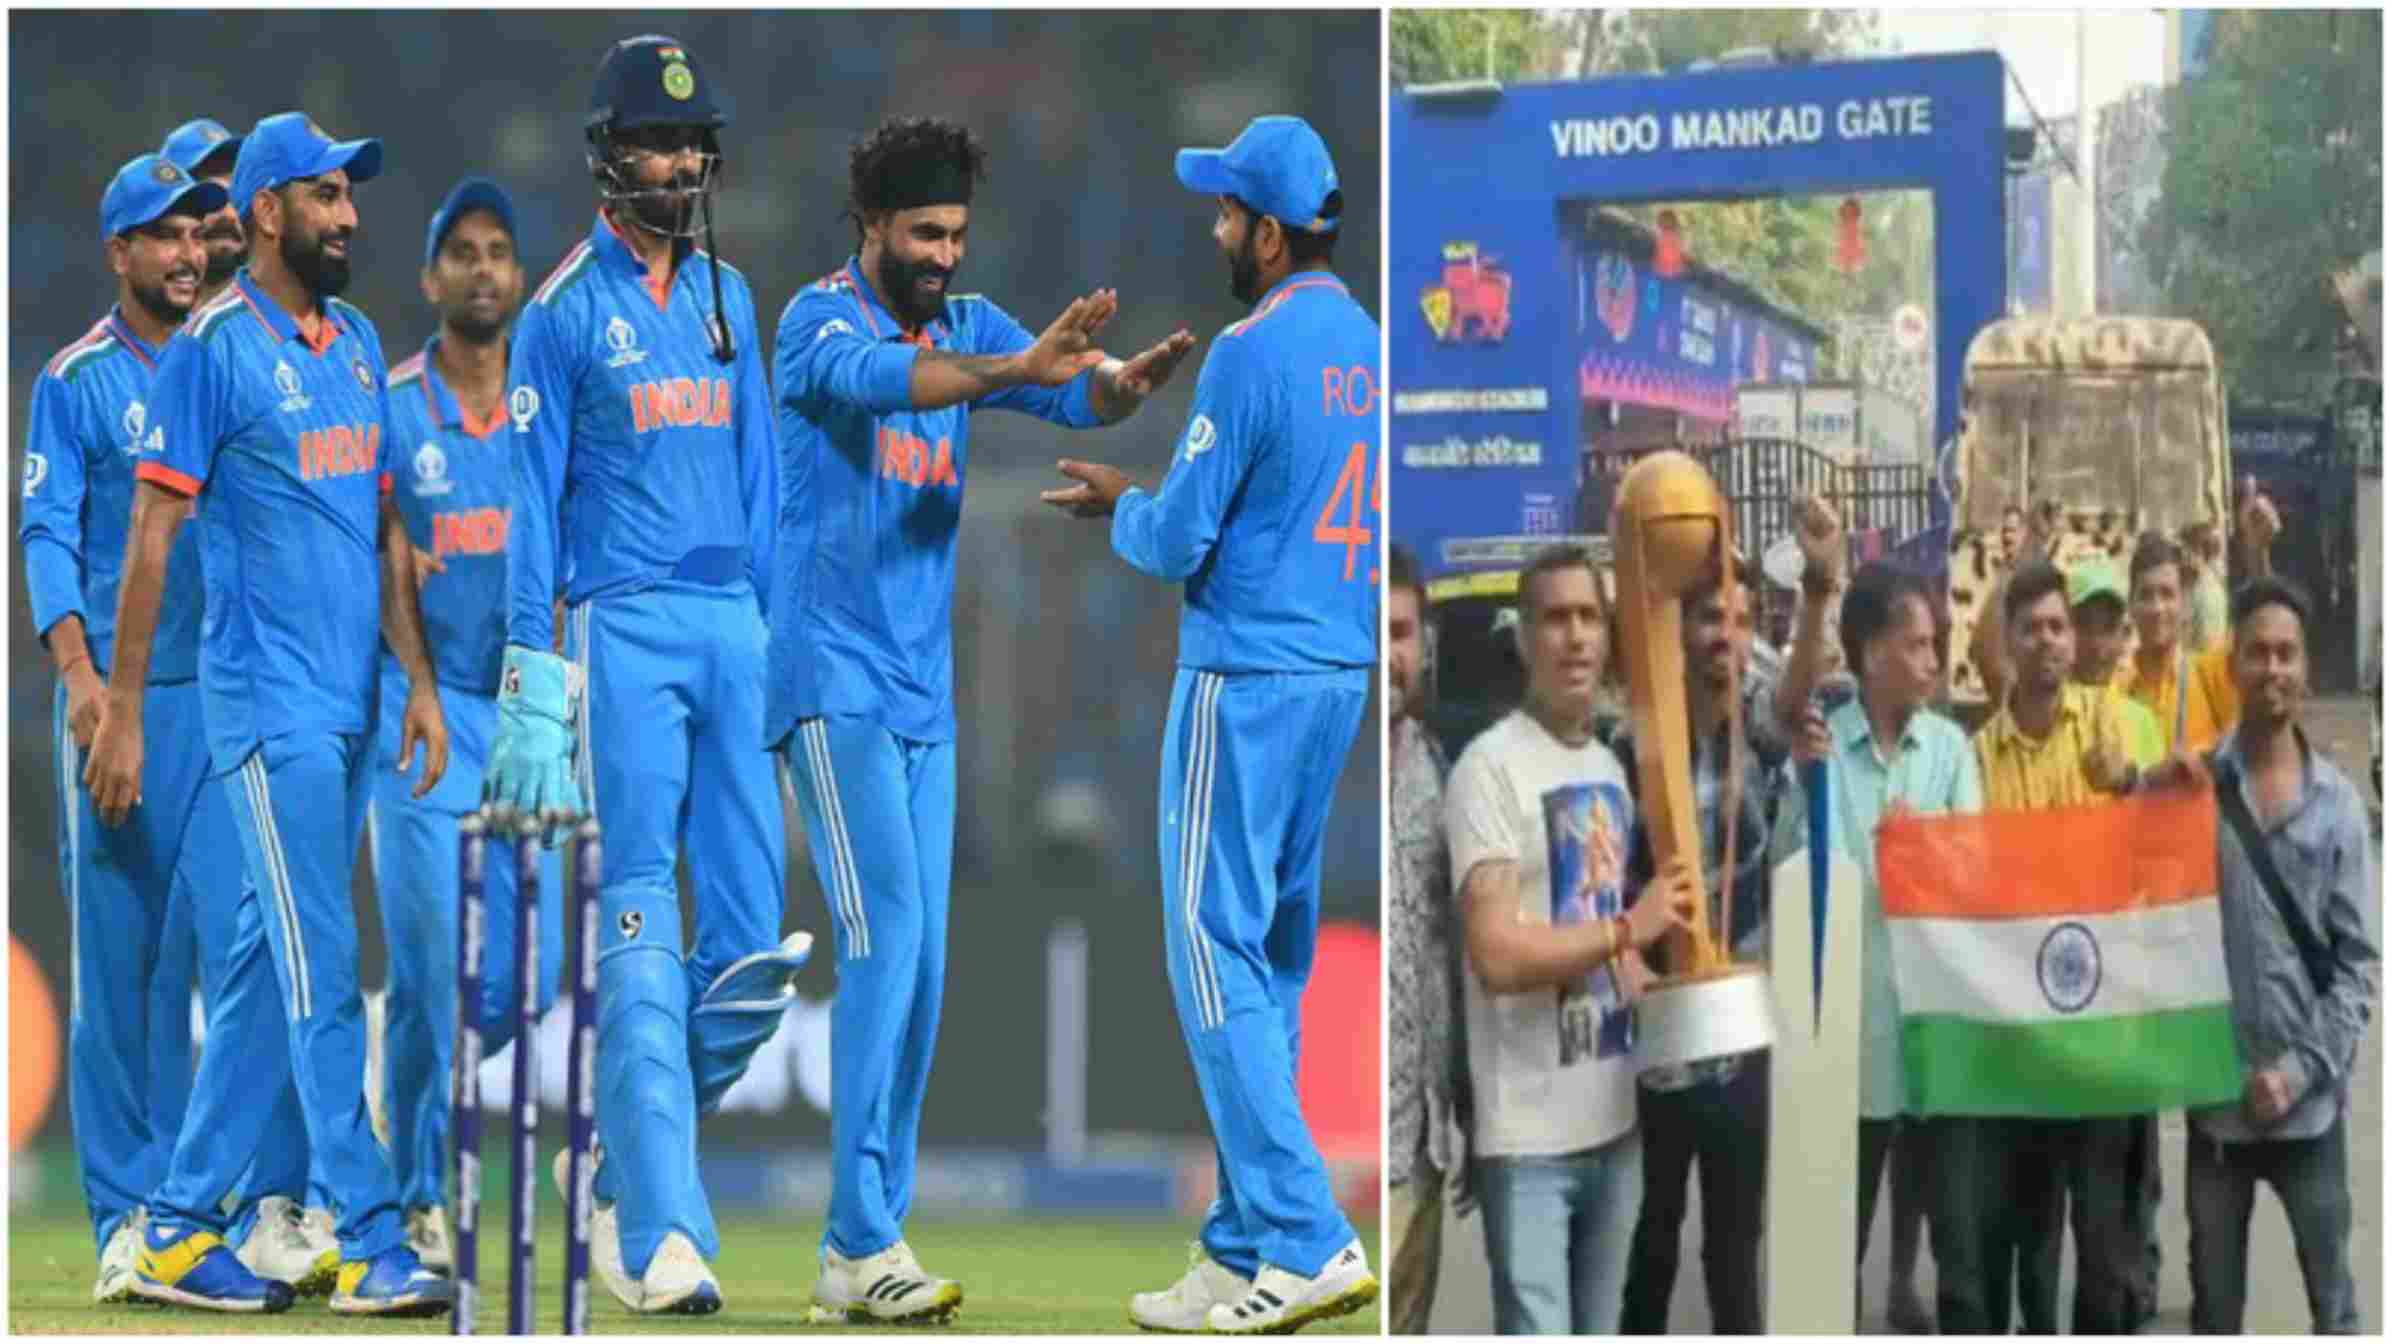 CWC23: भारत-न्यूजीलैंड के सेमीफाइनल पर खतरा? मैच से पहले मुंबई पुलिस को मिली धमकी